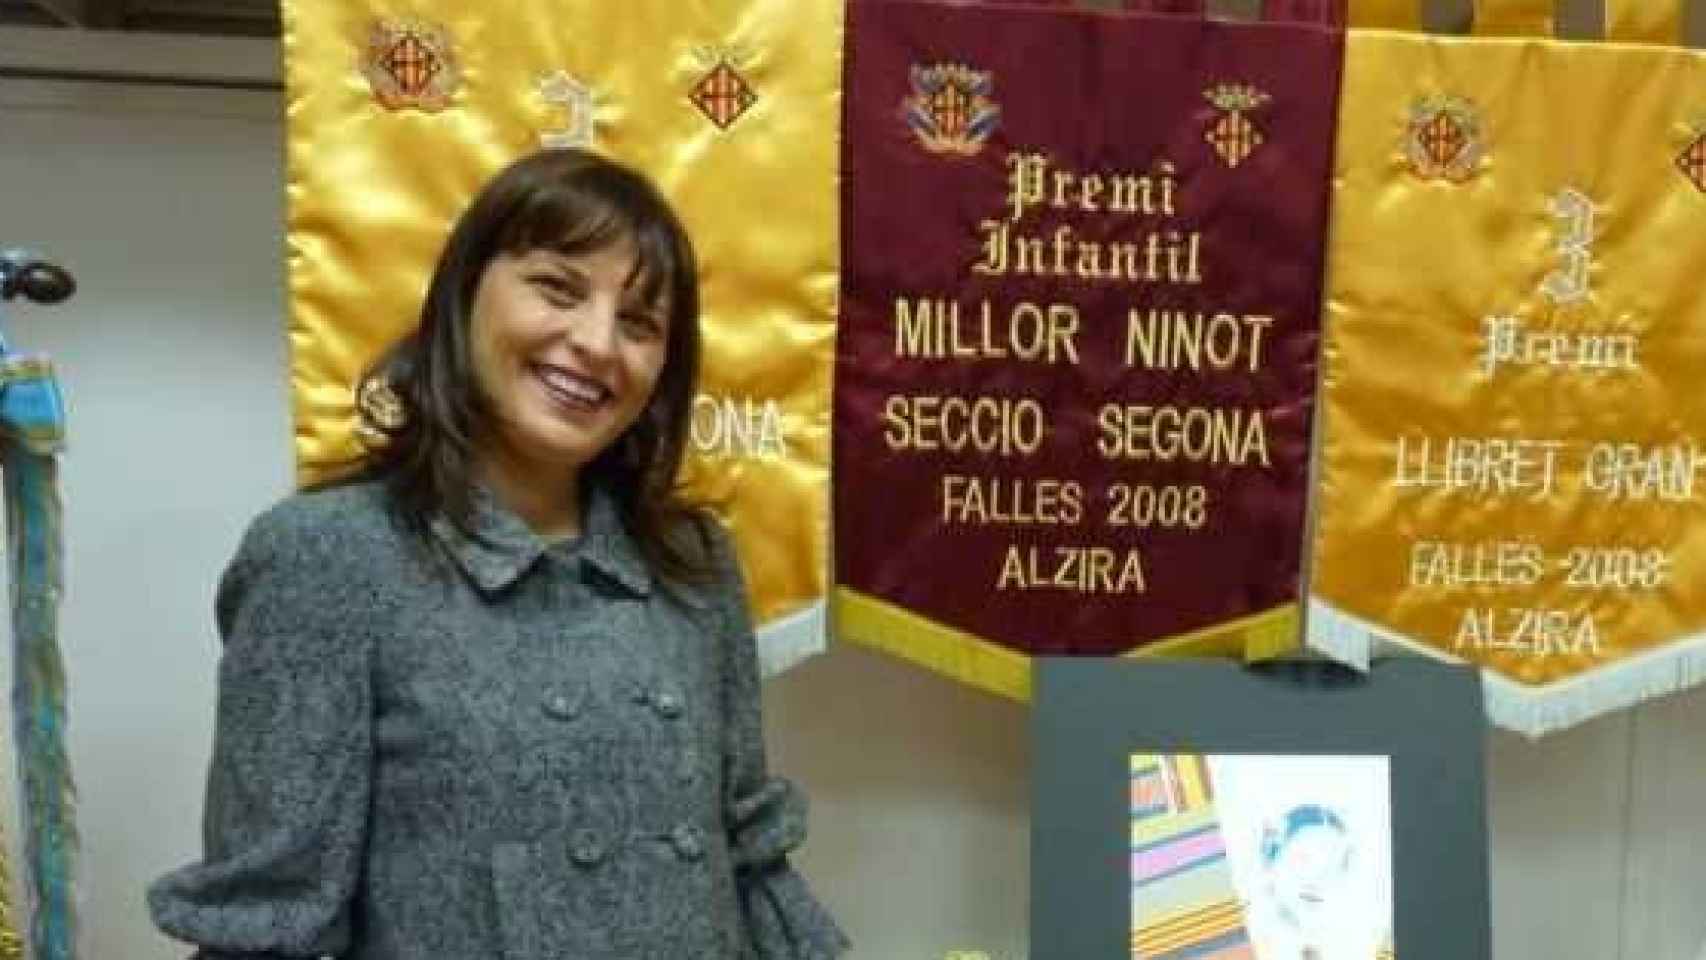 Deborah Salom, hija de Consuelo y pareja de Sergio, el año que fallera mayor.